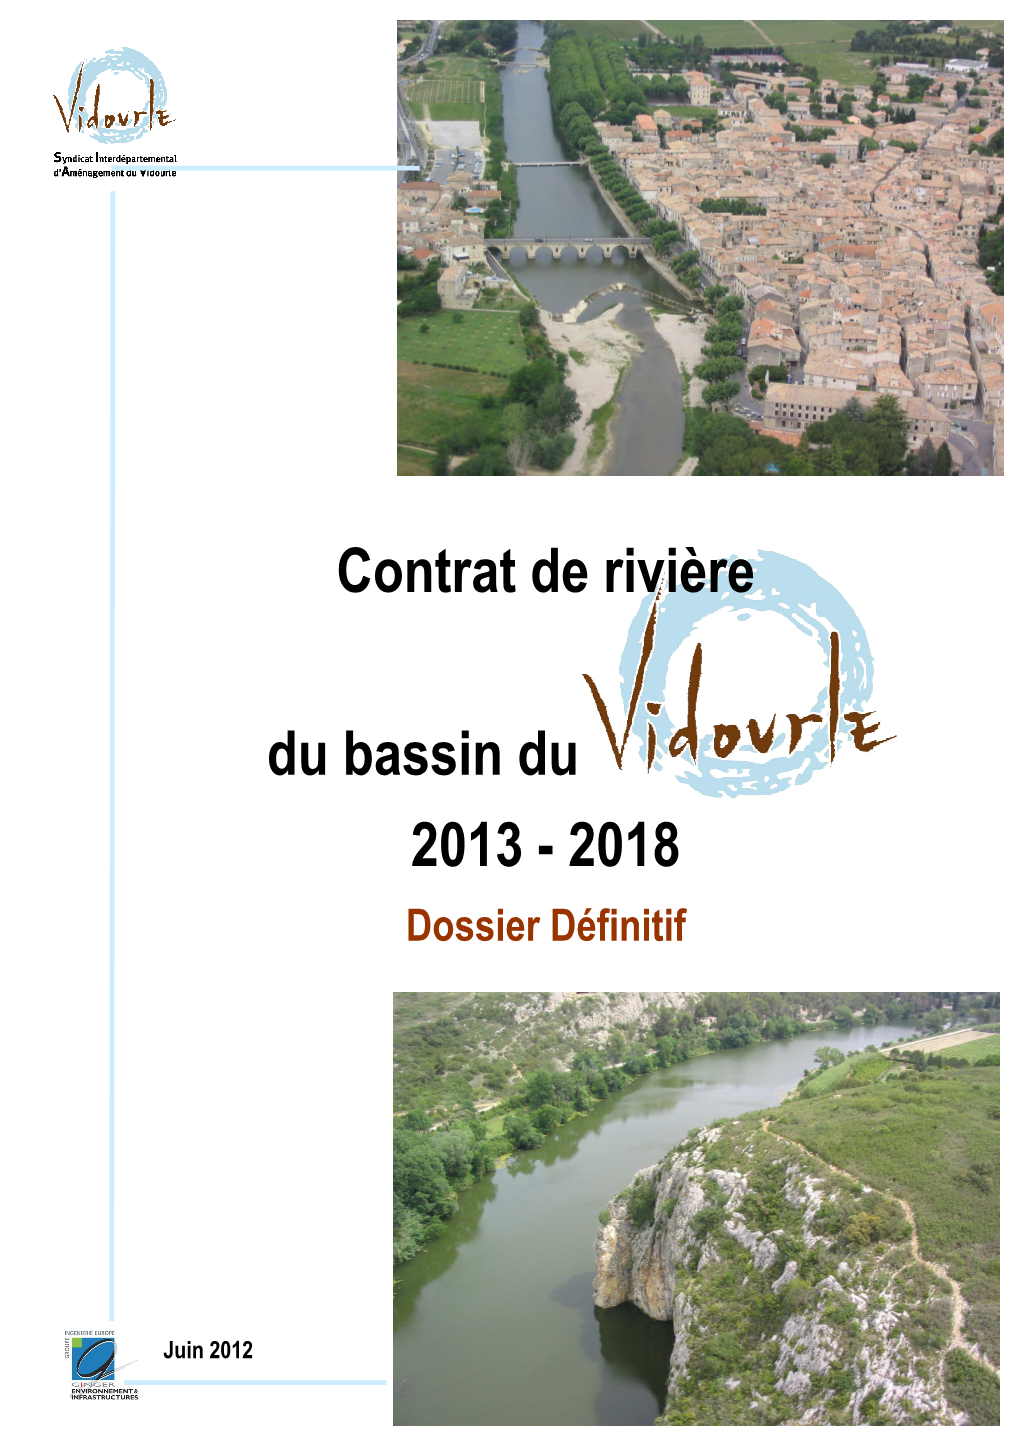 Contrat De Rivière Vidourle Dossier Définitif